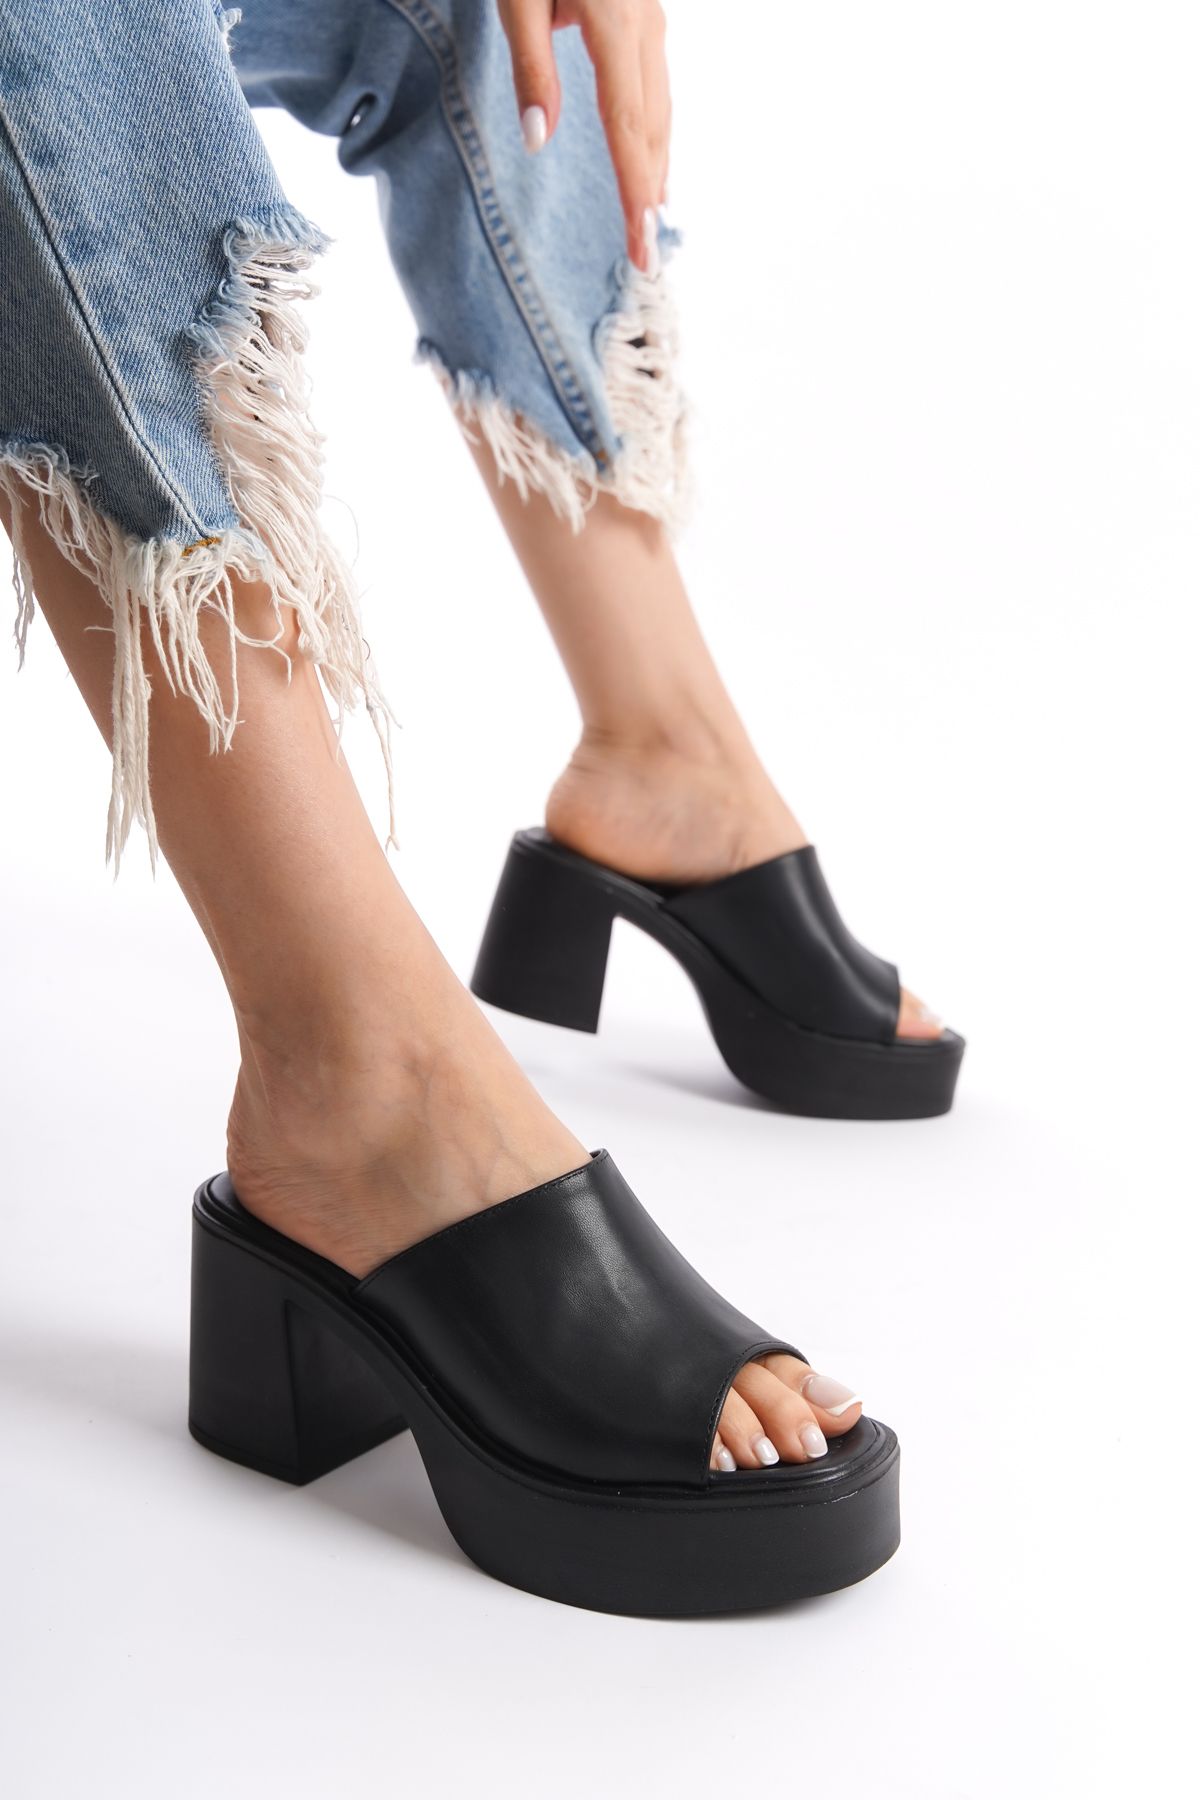 Limeo Siyah Yüksek Dolgu Topuklu Suni Deri Tek Kalın Şeritli Önü Açık Yazlık Kadın Terlik Sandalet